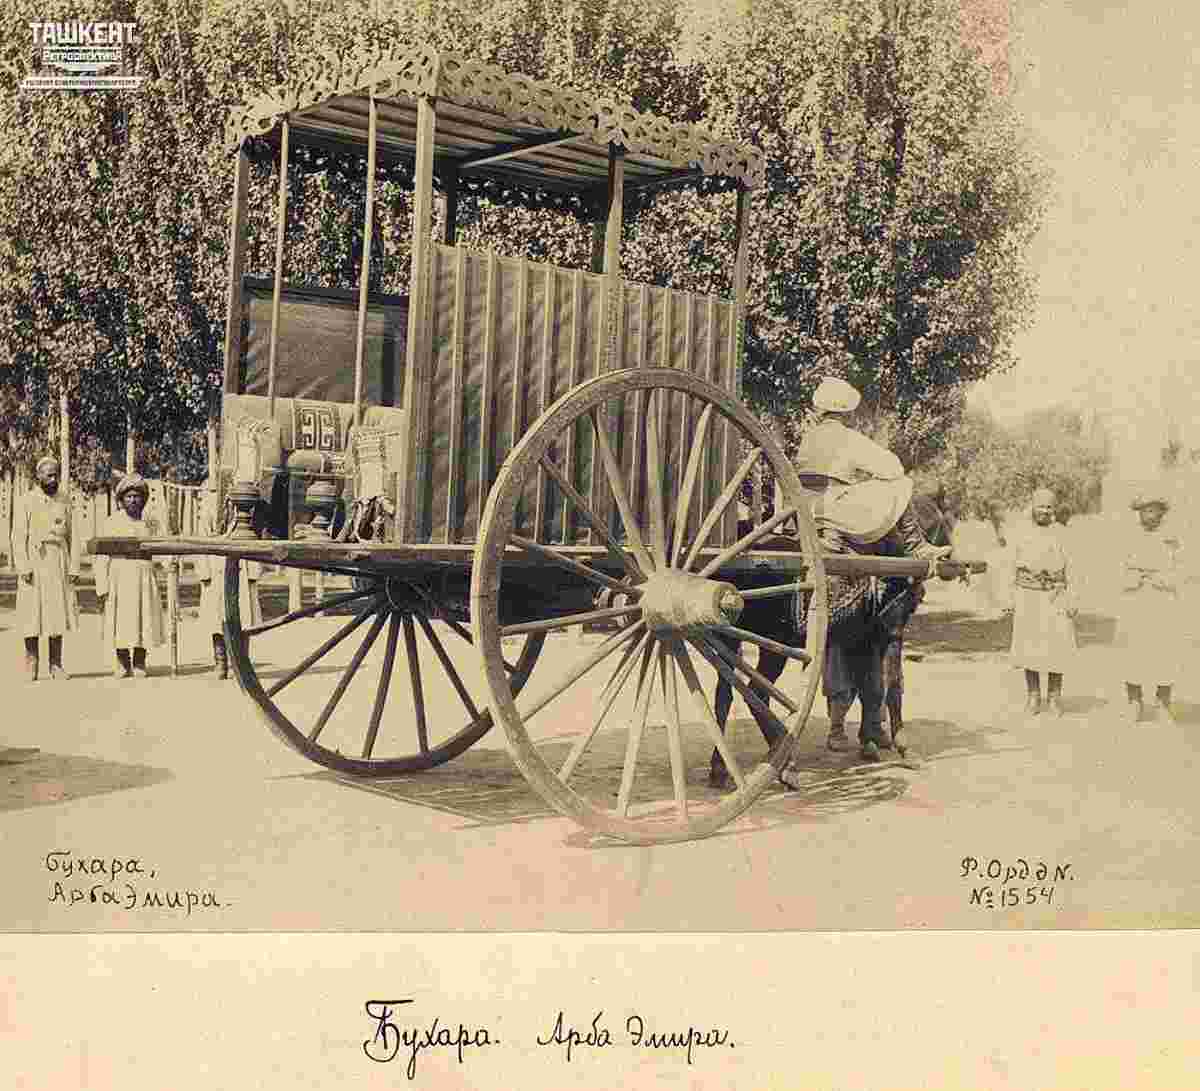 Bukhara. Arba Emir, 1896-1898